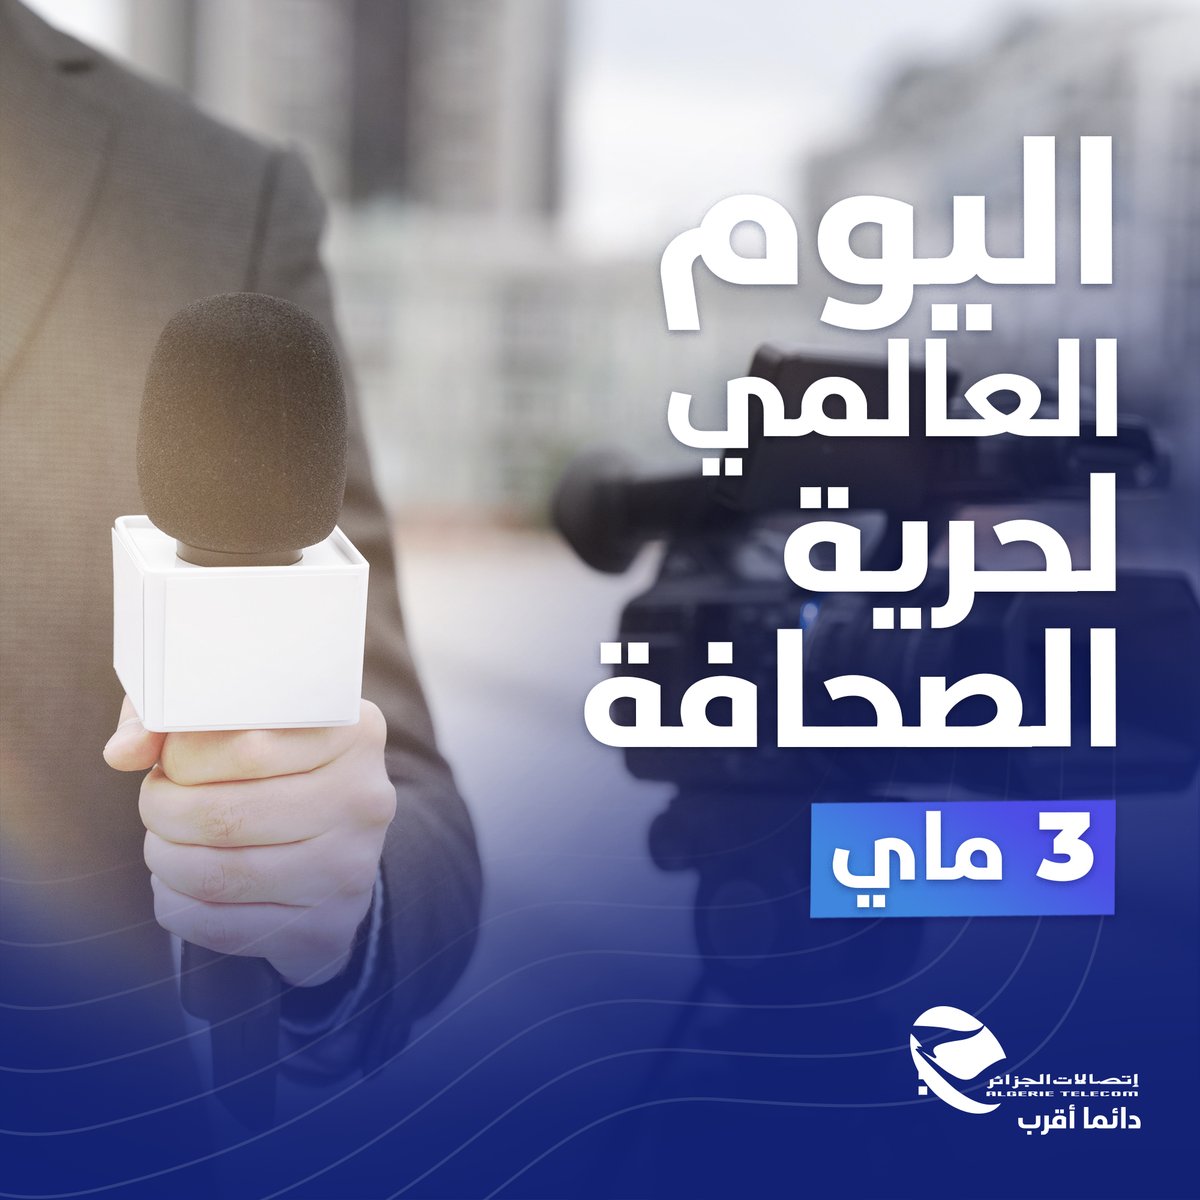 إتصالات الجزائر تهنئ كل الصحفين و الإعلاميين الجزائرين 🇩🇿 بمناسبة اليوم العالمي لحرية الصحافة 📰. #اتصالات_الجزائر #دائما_أقرب #اليوم_العالمي_لحرية_الصحافة